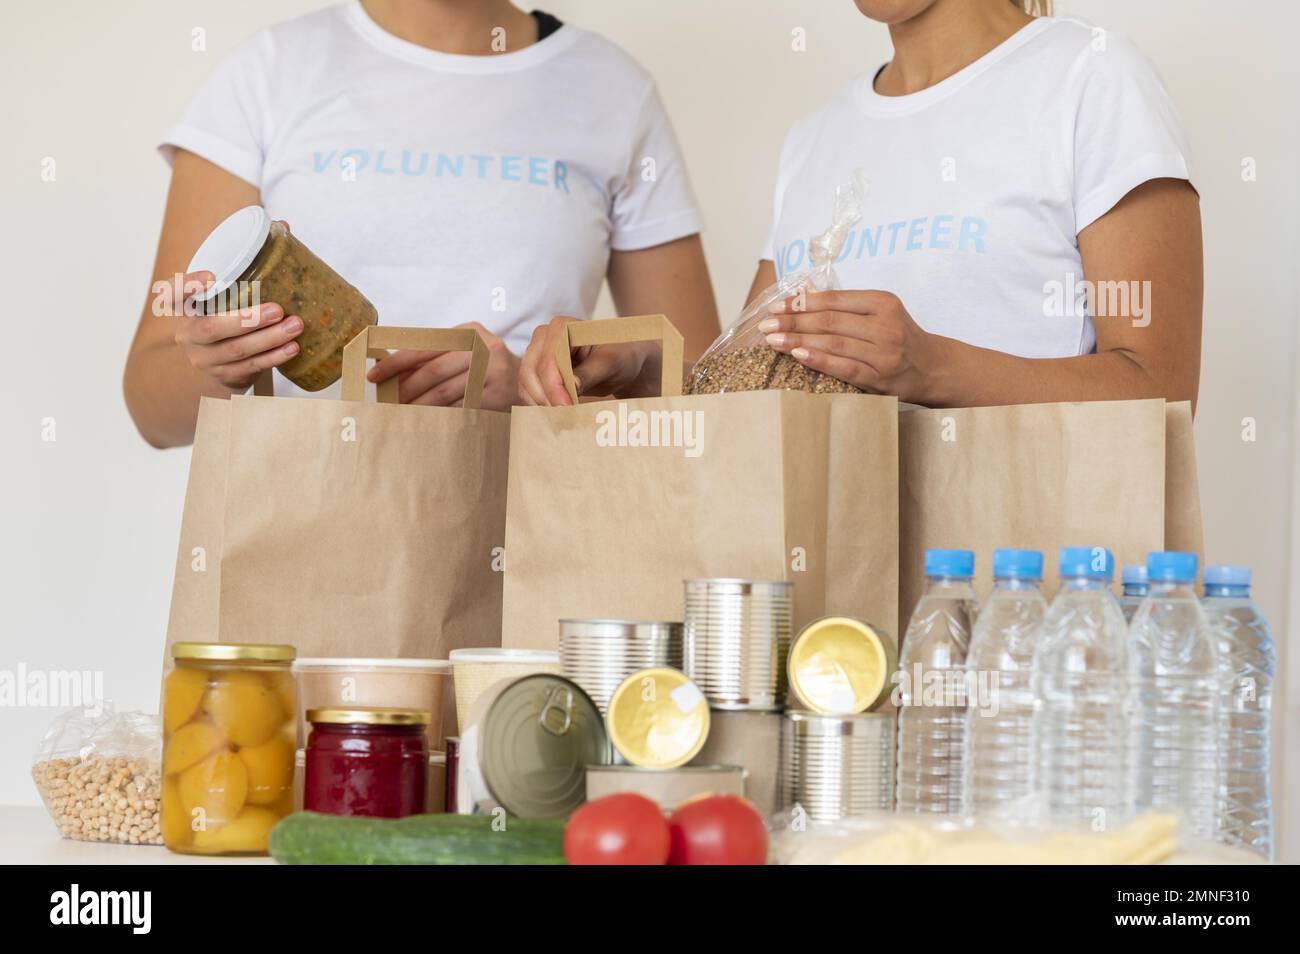 Freiwillige mit Taschen Proviant Wasser Spende. Auflösung und hochwertige schöne Fotos Stockfoto